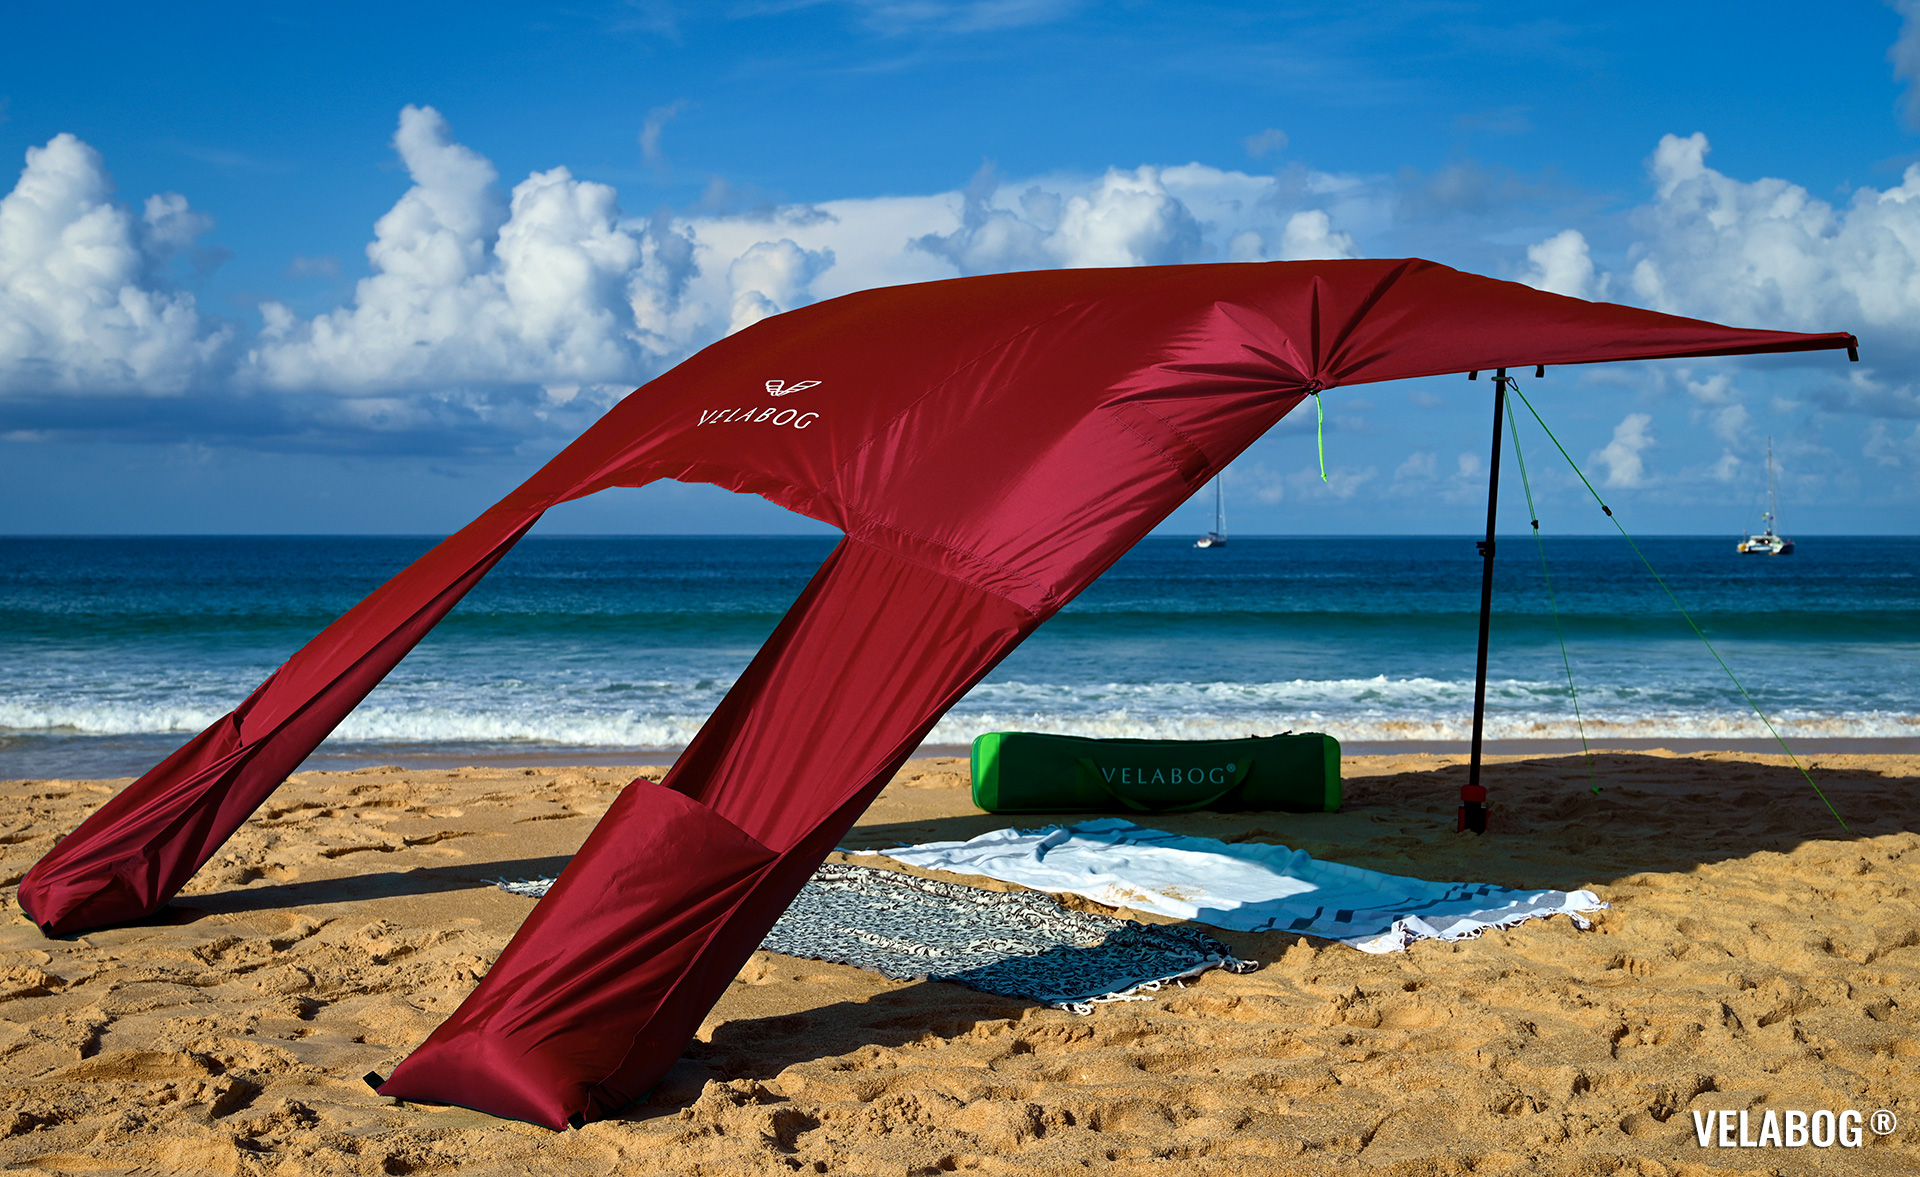 Солнечный пляжный парус навес Velabog Breeze. Вариант установки А - от слабого до сильного ветра. Цвет красный. Лучшая защита от солнца на пляже. | Velabog ©